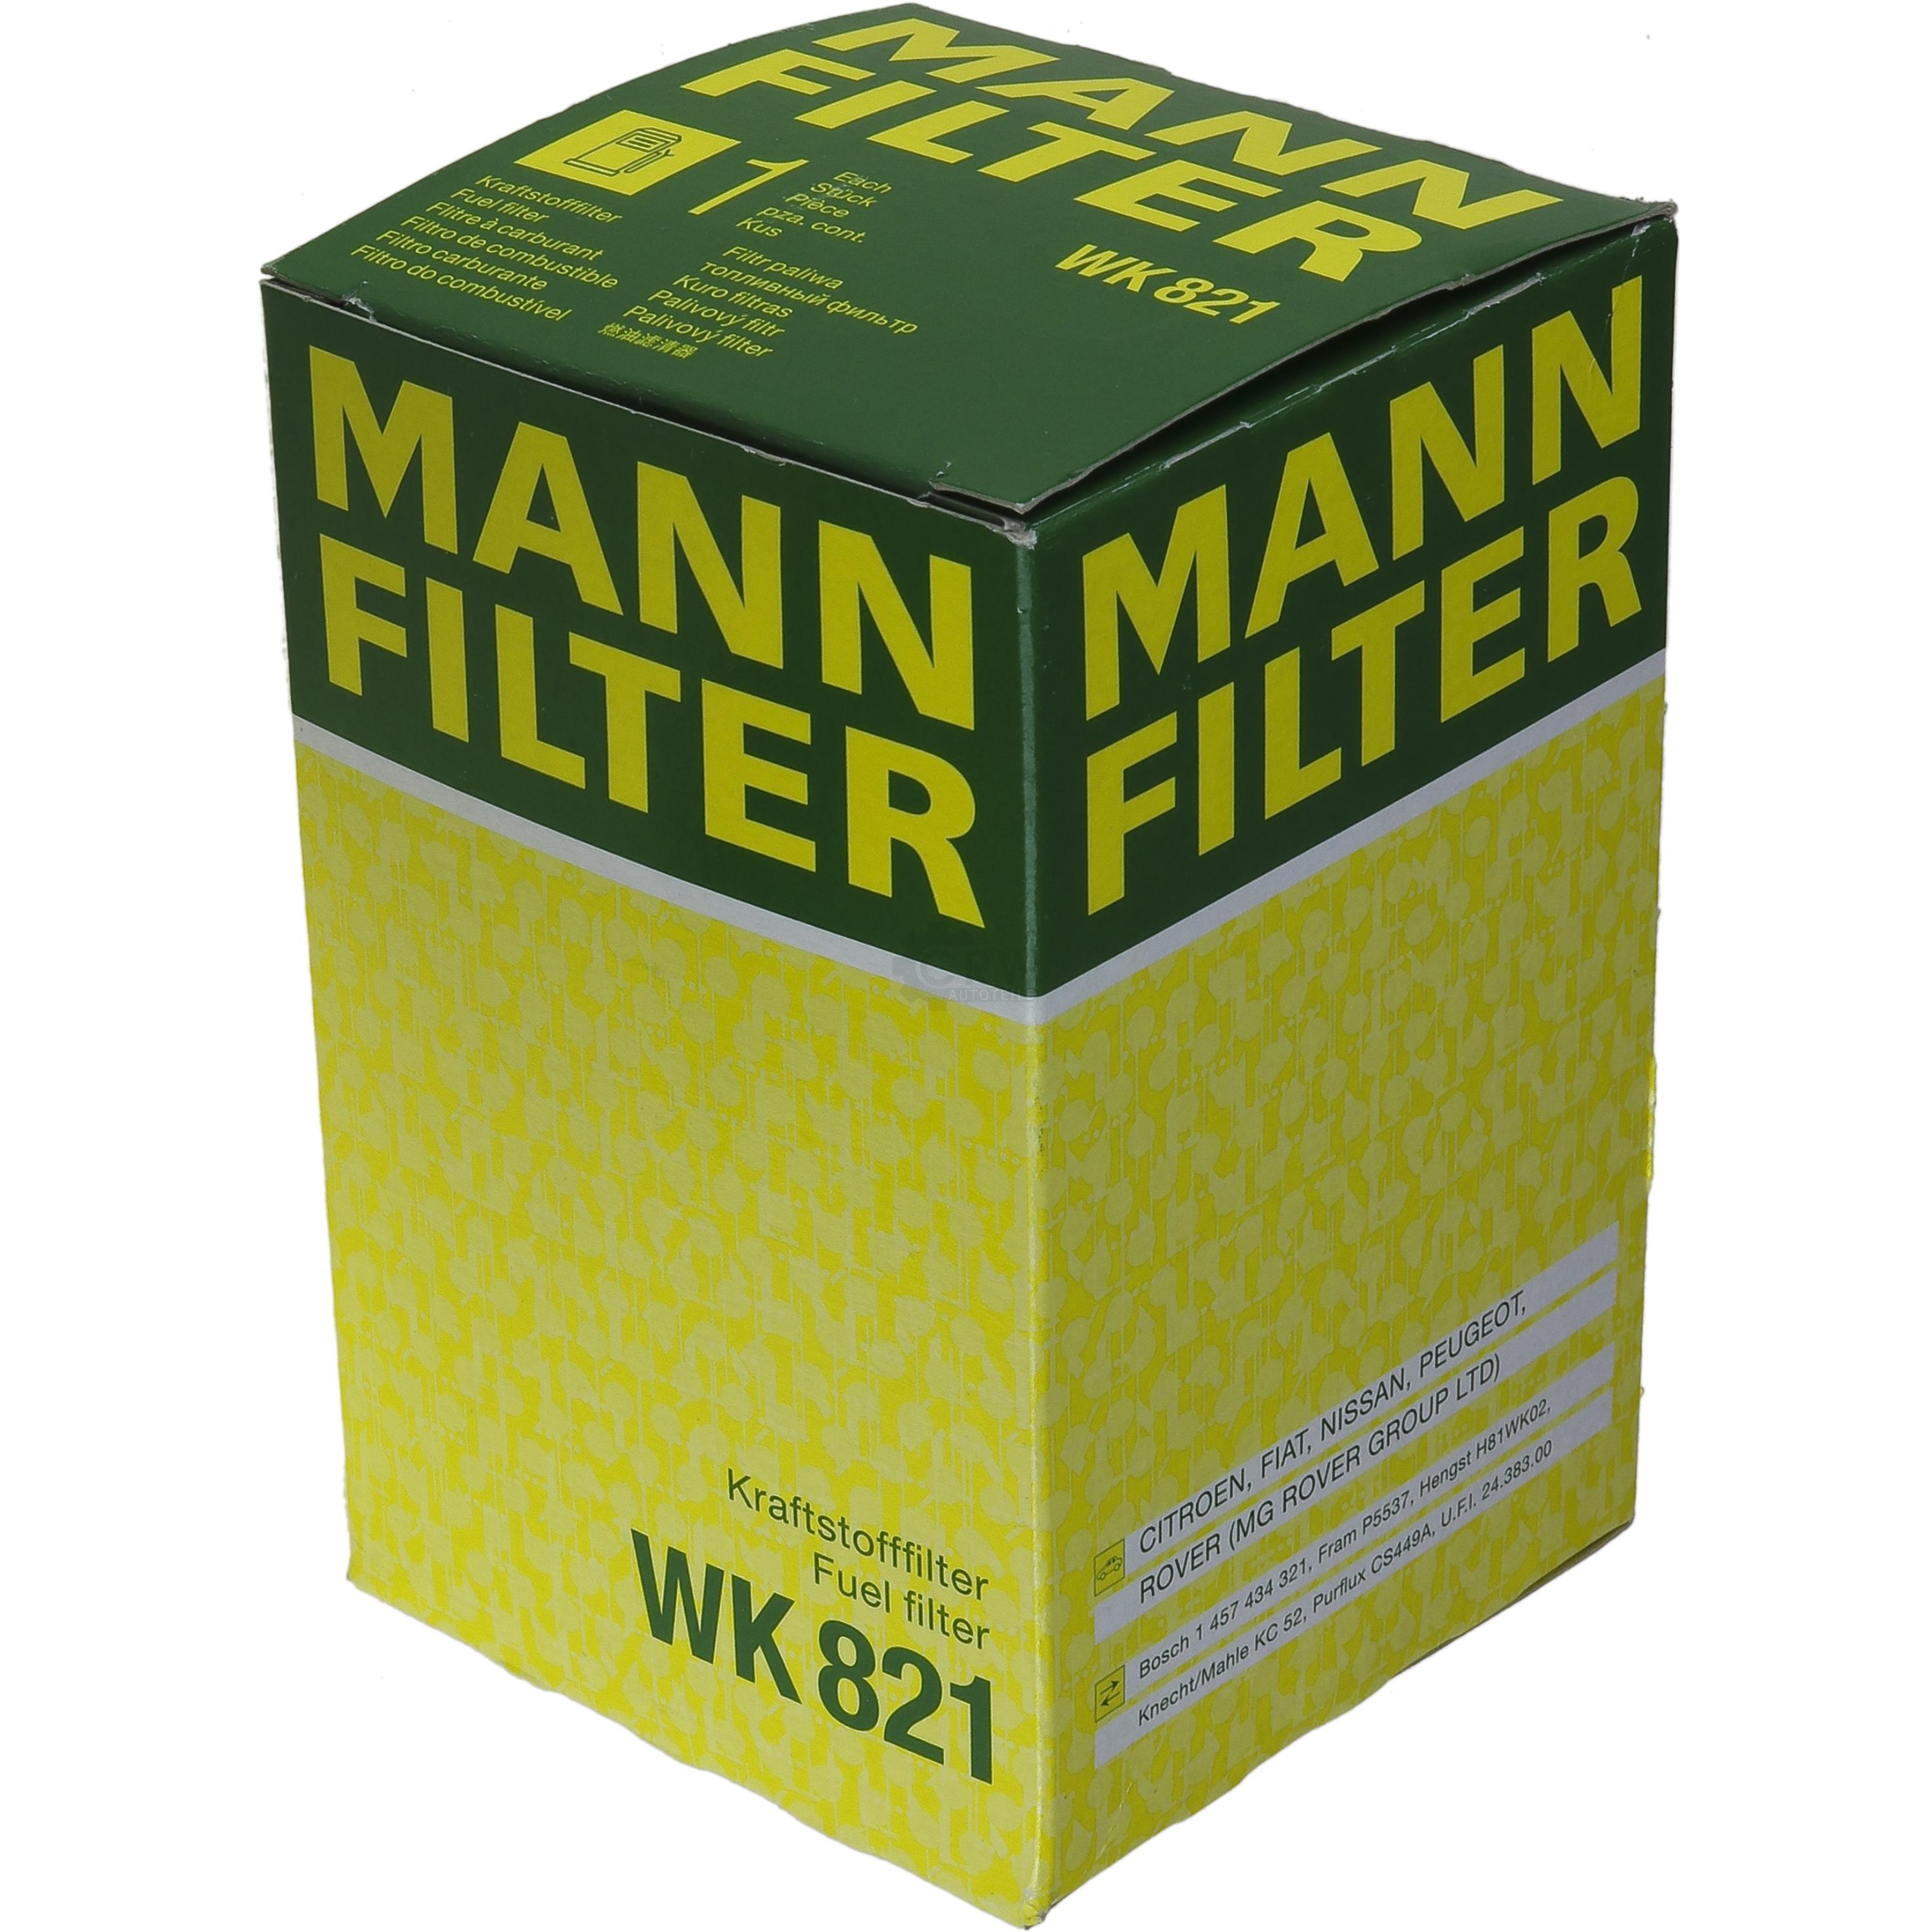 MANN-FILTER Kraftstofffilter WK 821 Fuel Filter